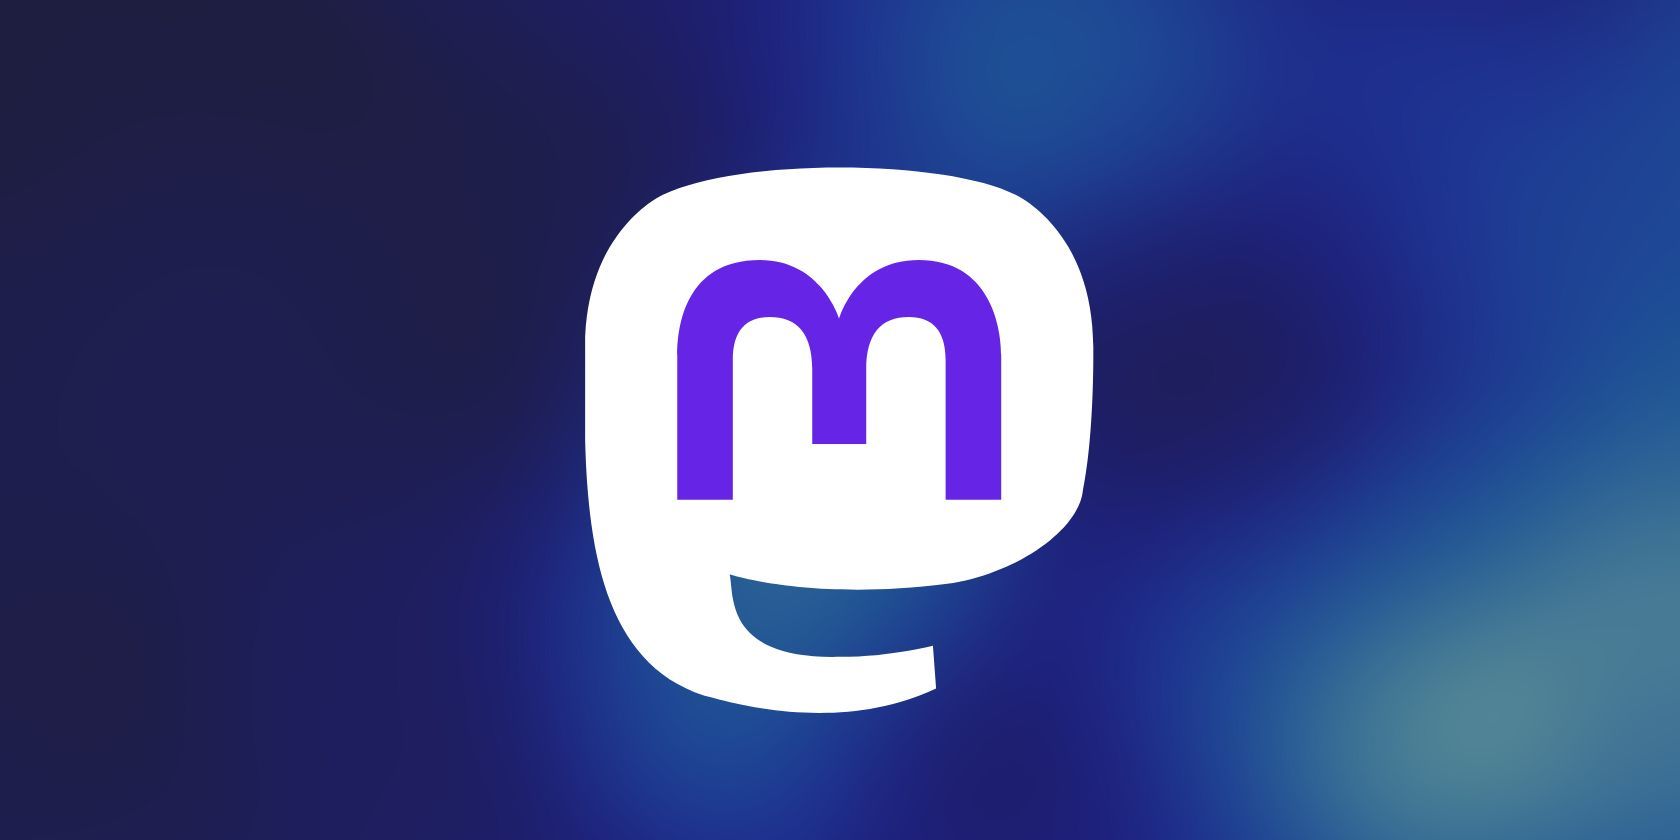 The Mastodon logo is seen against a faint blue background 